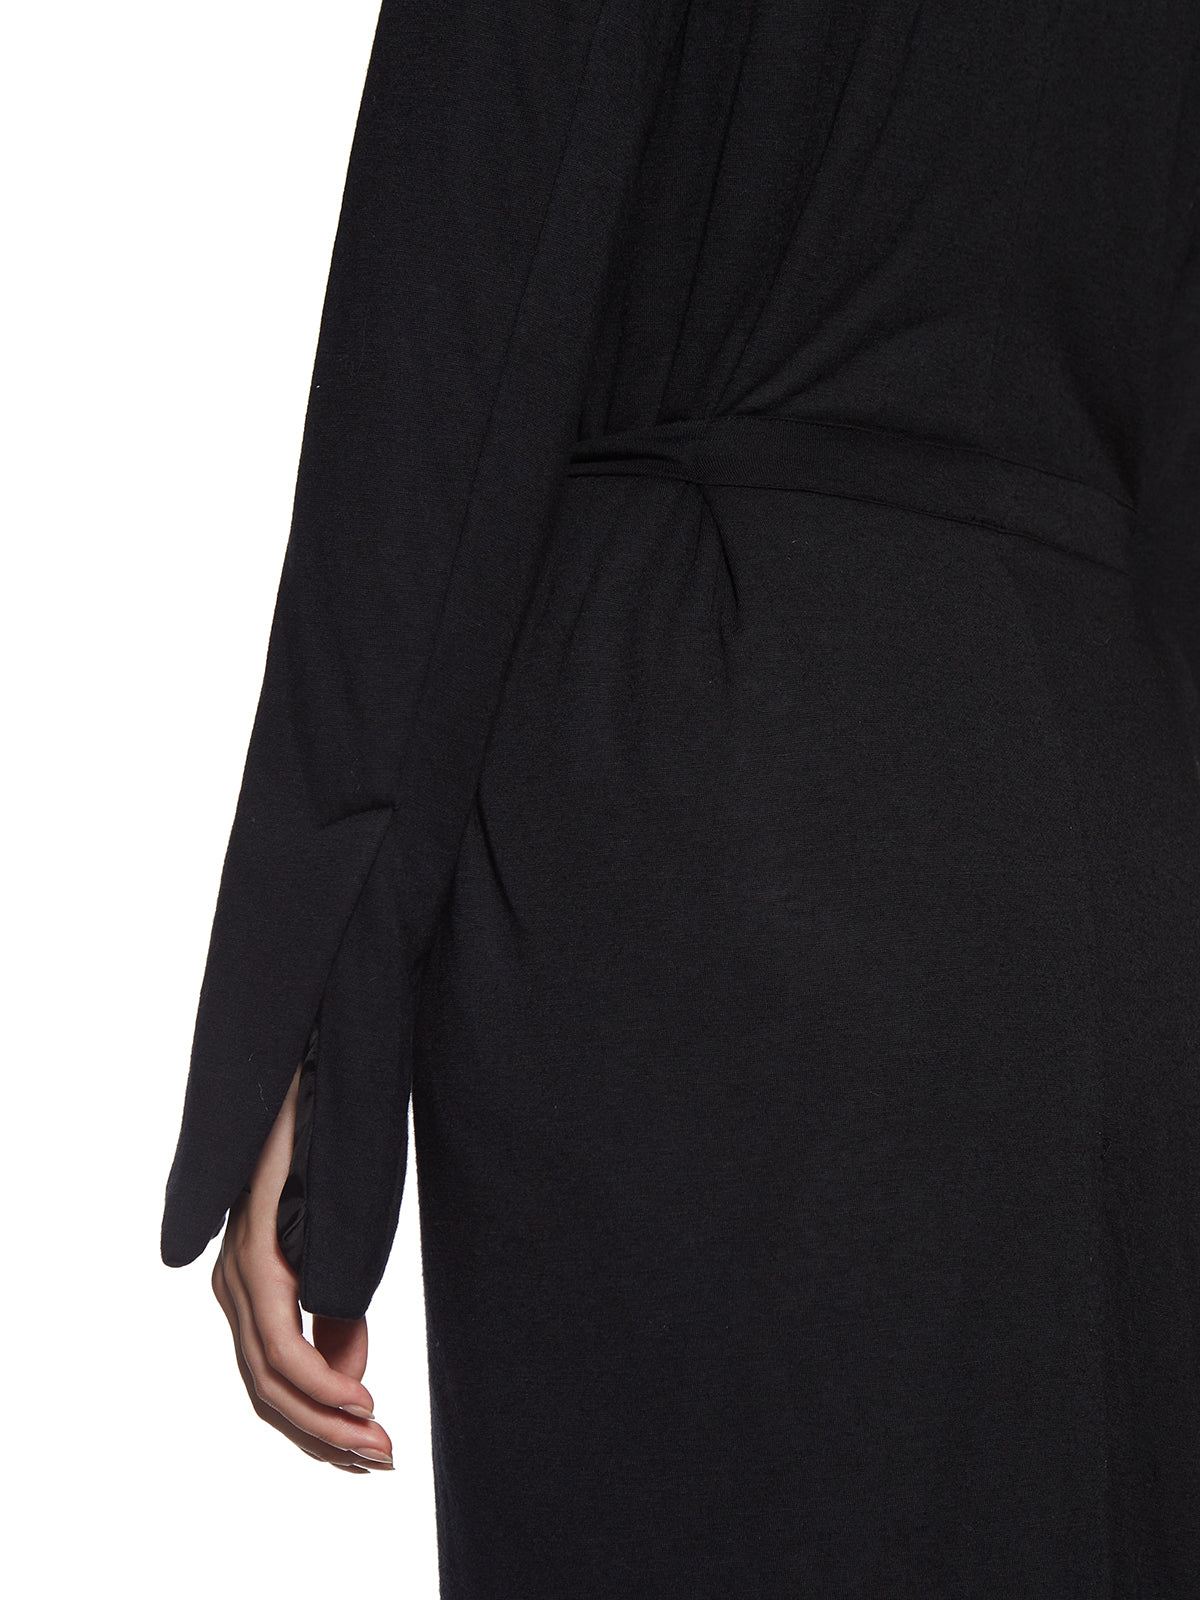 Áo khoác lông, len và tơ tổng hợp đen cho phụ nữ